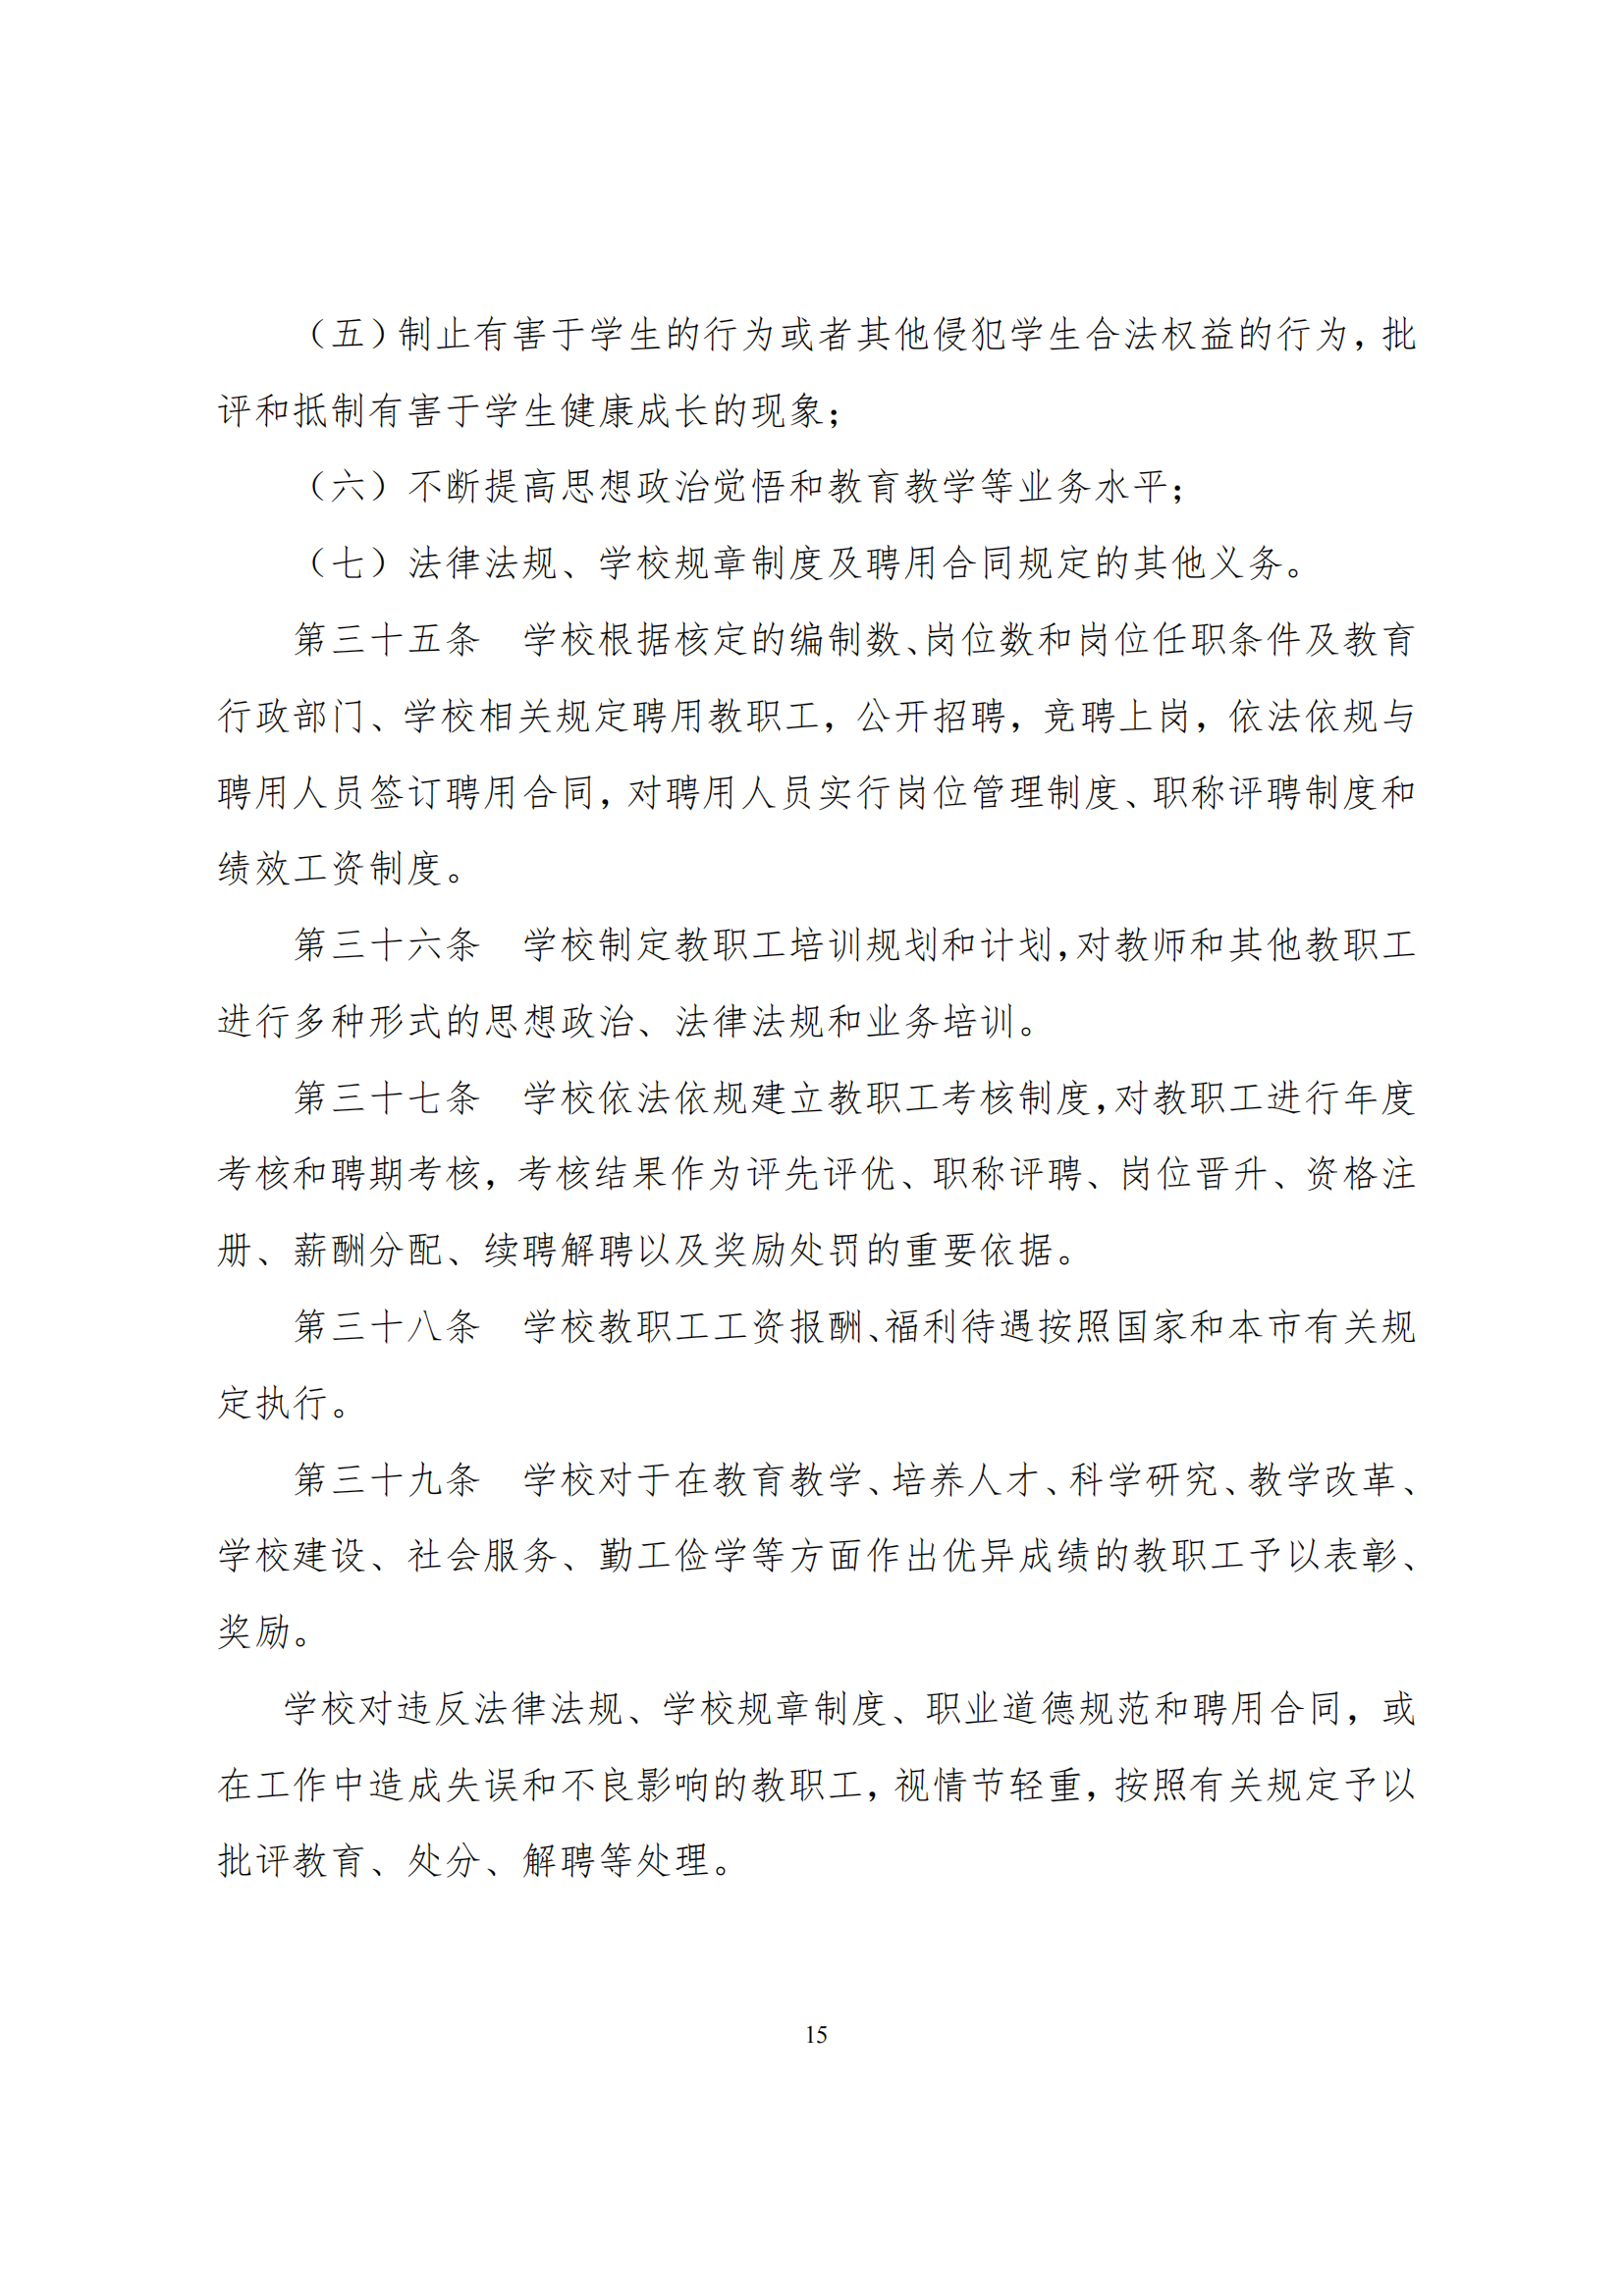 上海市徐汇区求知小学学校章程（提交稿）_14.png